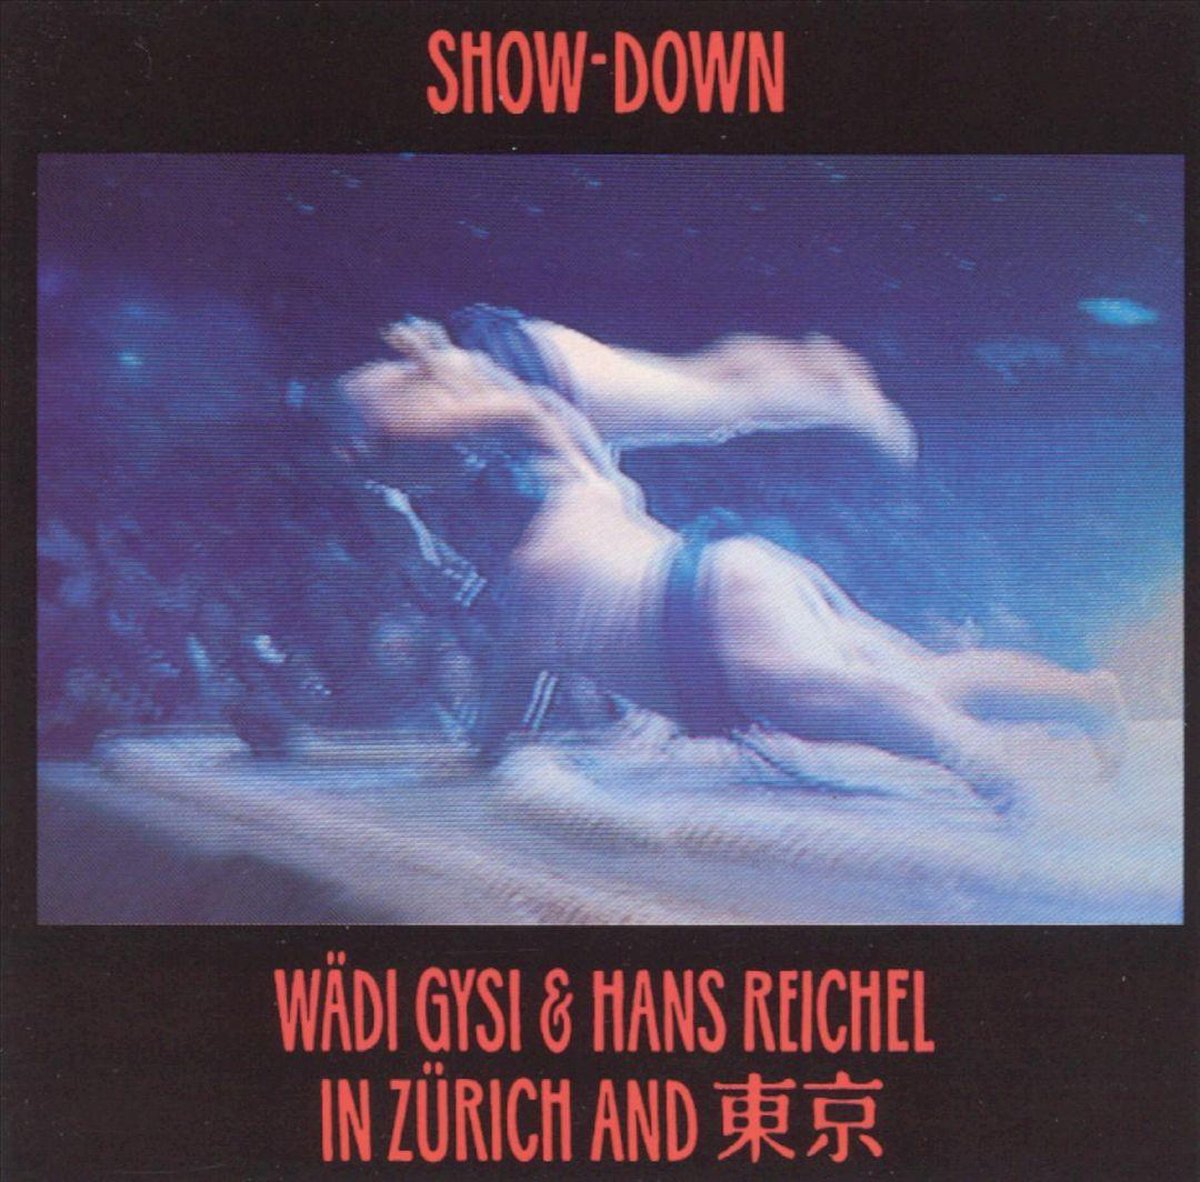 Gysi/Reichel: Show-Down